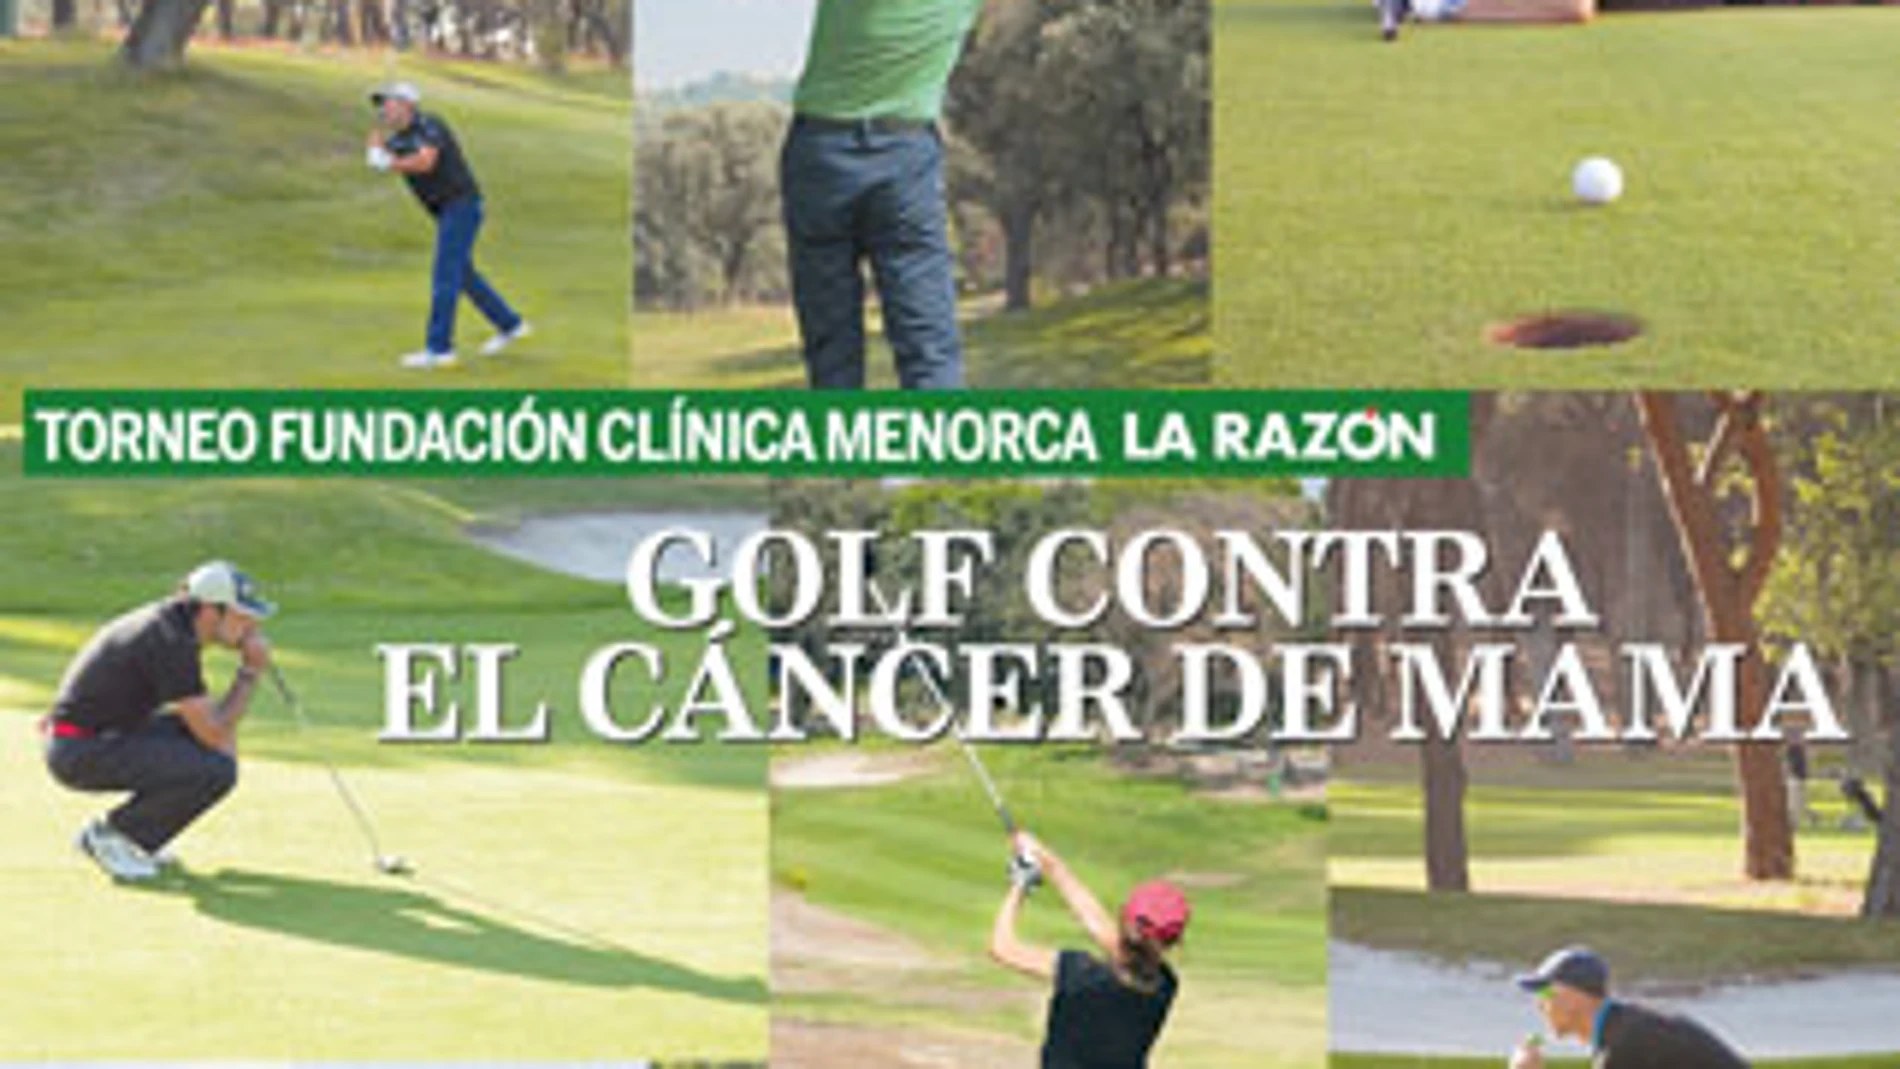 Golf contra el cáncer de mama